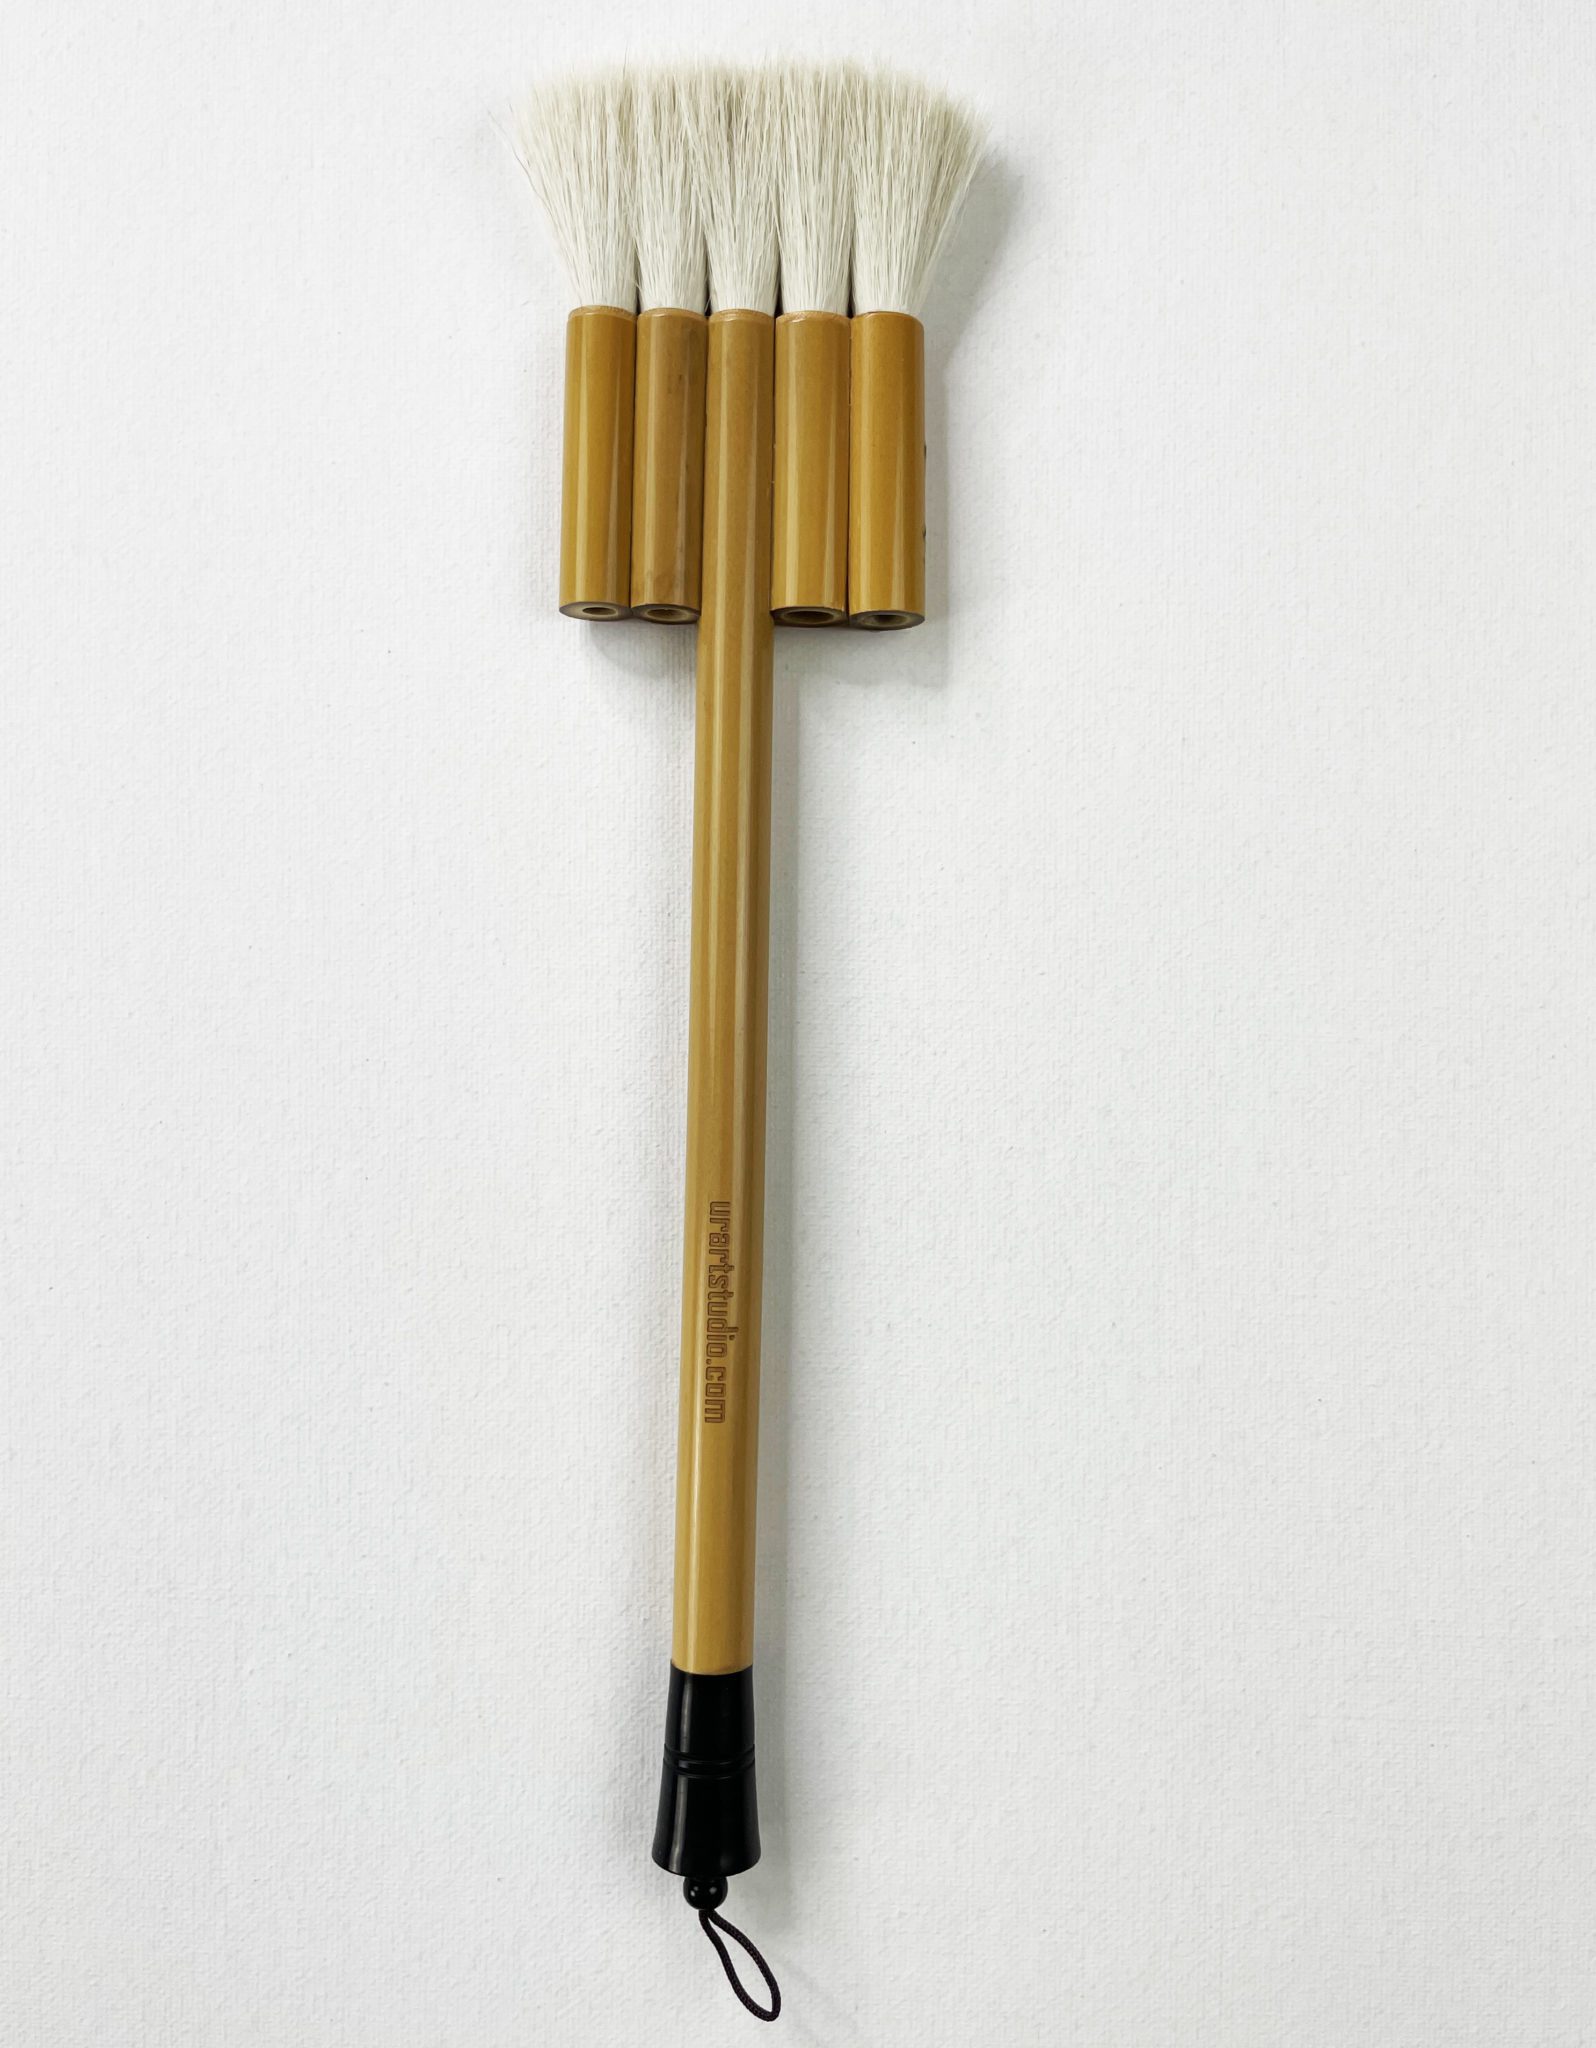 Major Brushes Soft Synthetic Blending Artist Paintbrush - WASH 1.5 / 38mm